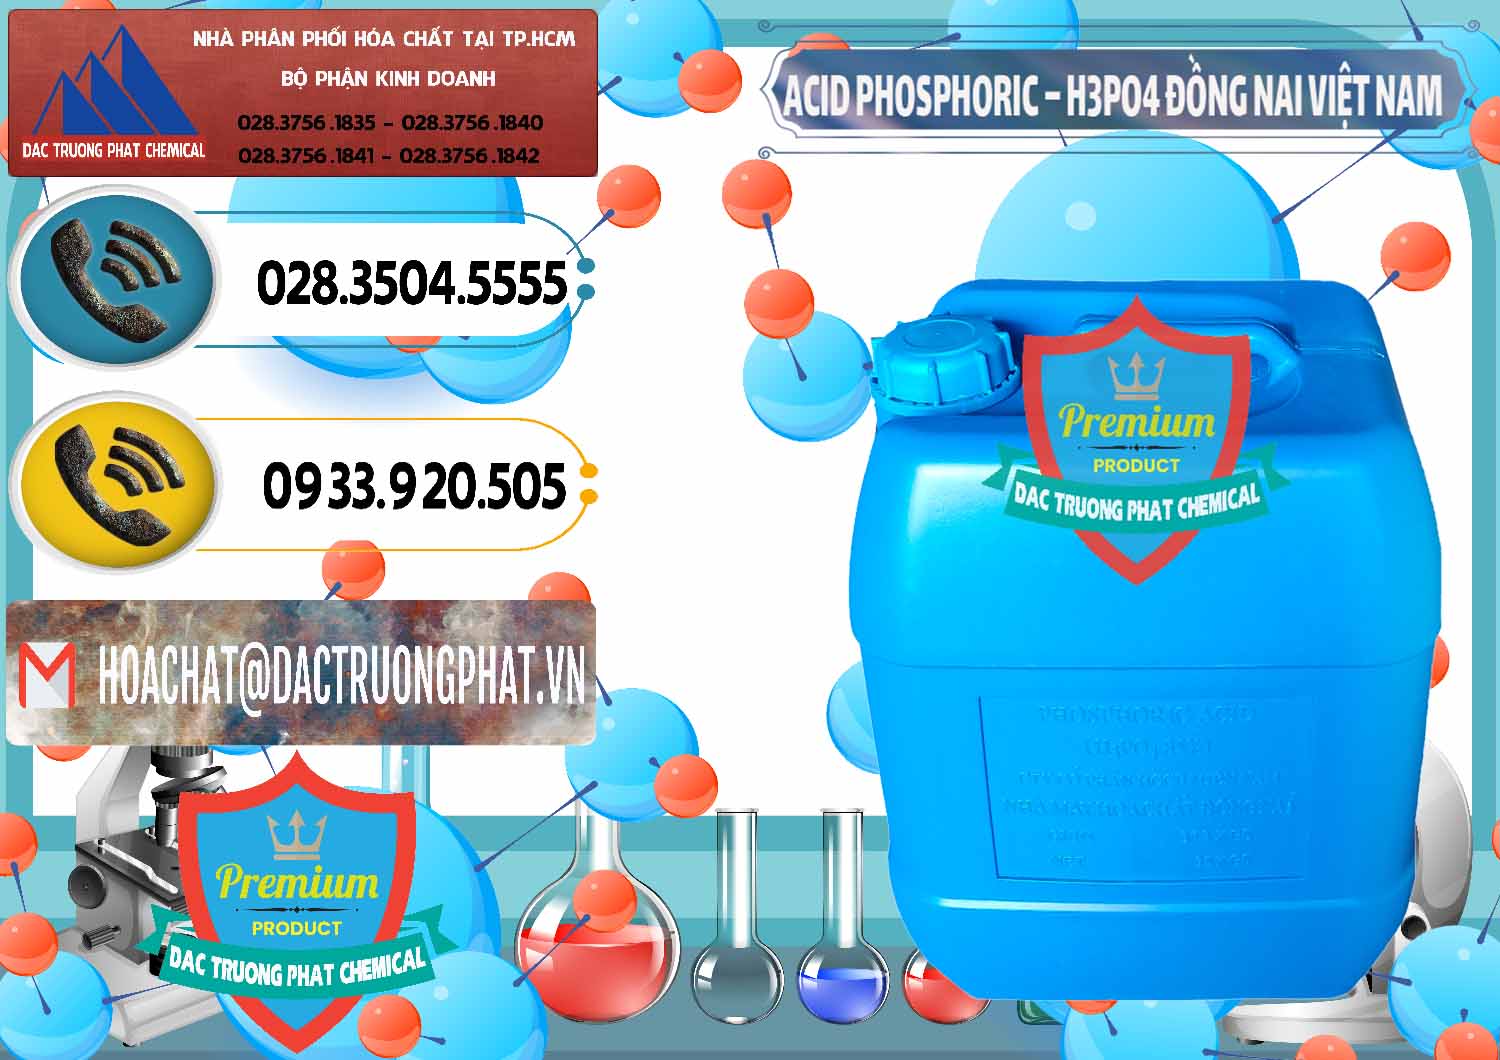 Chuyên bán & phân phối Acid Phosphoric – Axit Phosphoric 85% Đồng Nai Việt Nam - 0183 - Cty bán và phân phối hóa chất tại TP.HCM - hoachatdetnhuom.vn